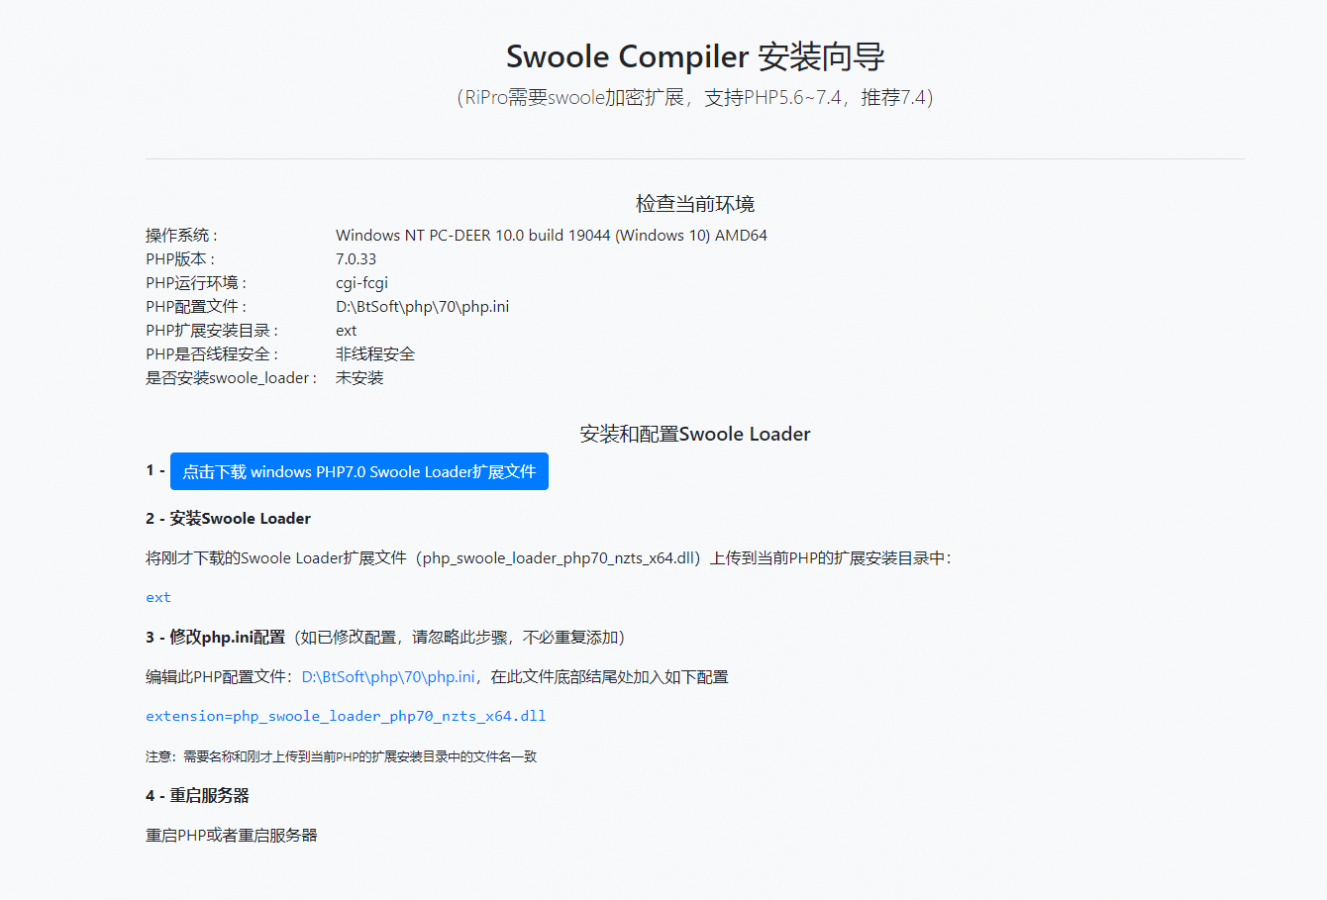 盒子云 - Swoole Compiler多版本扩展 - 资源封面